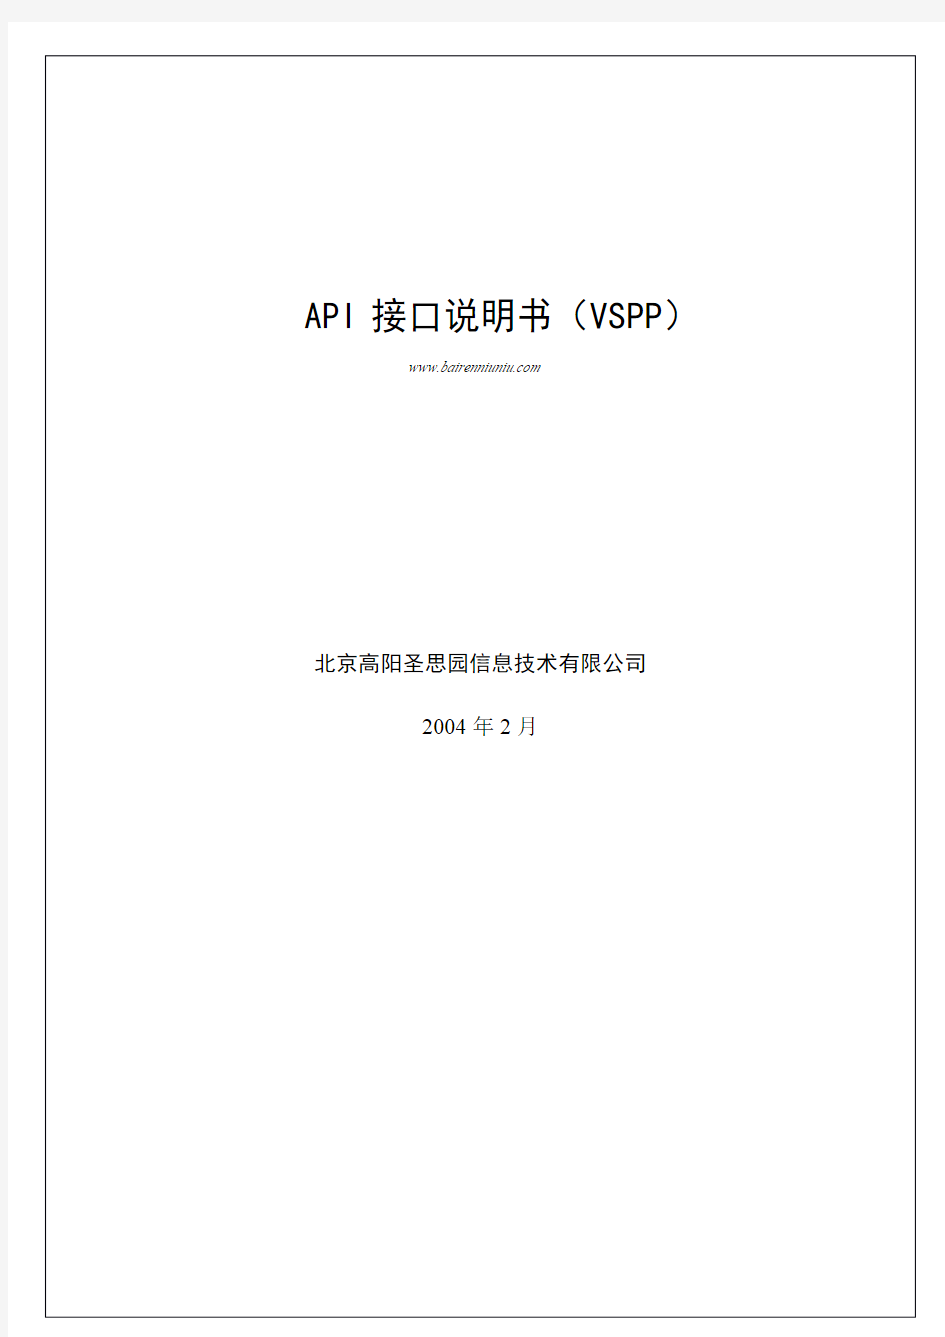 API接口说明书(VSPP)#20040225